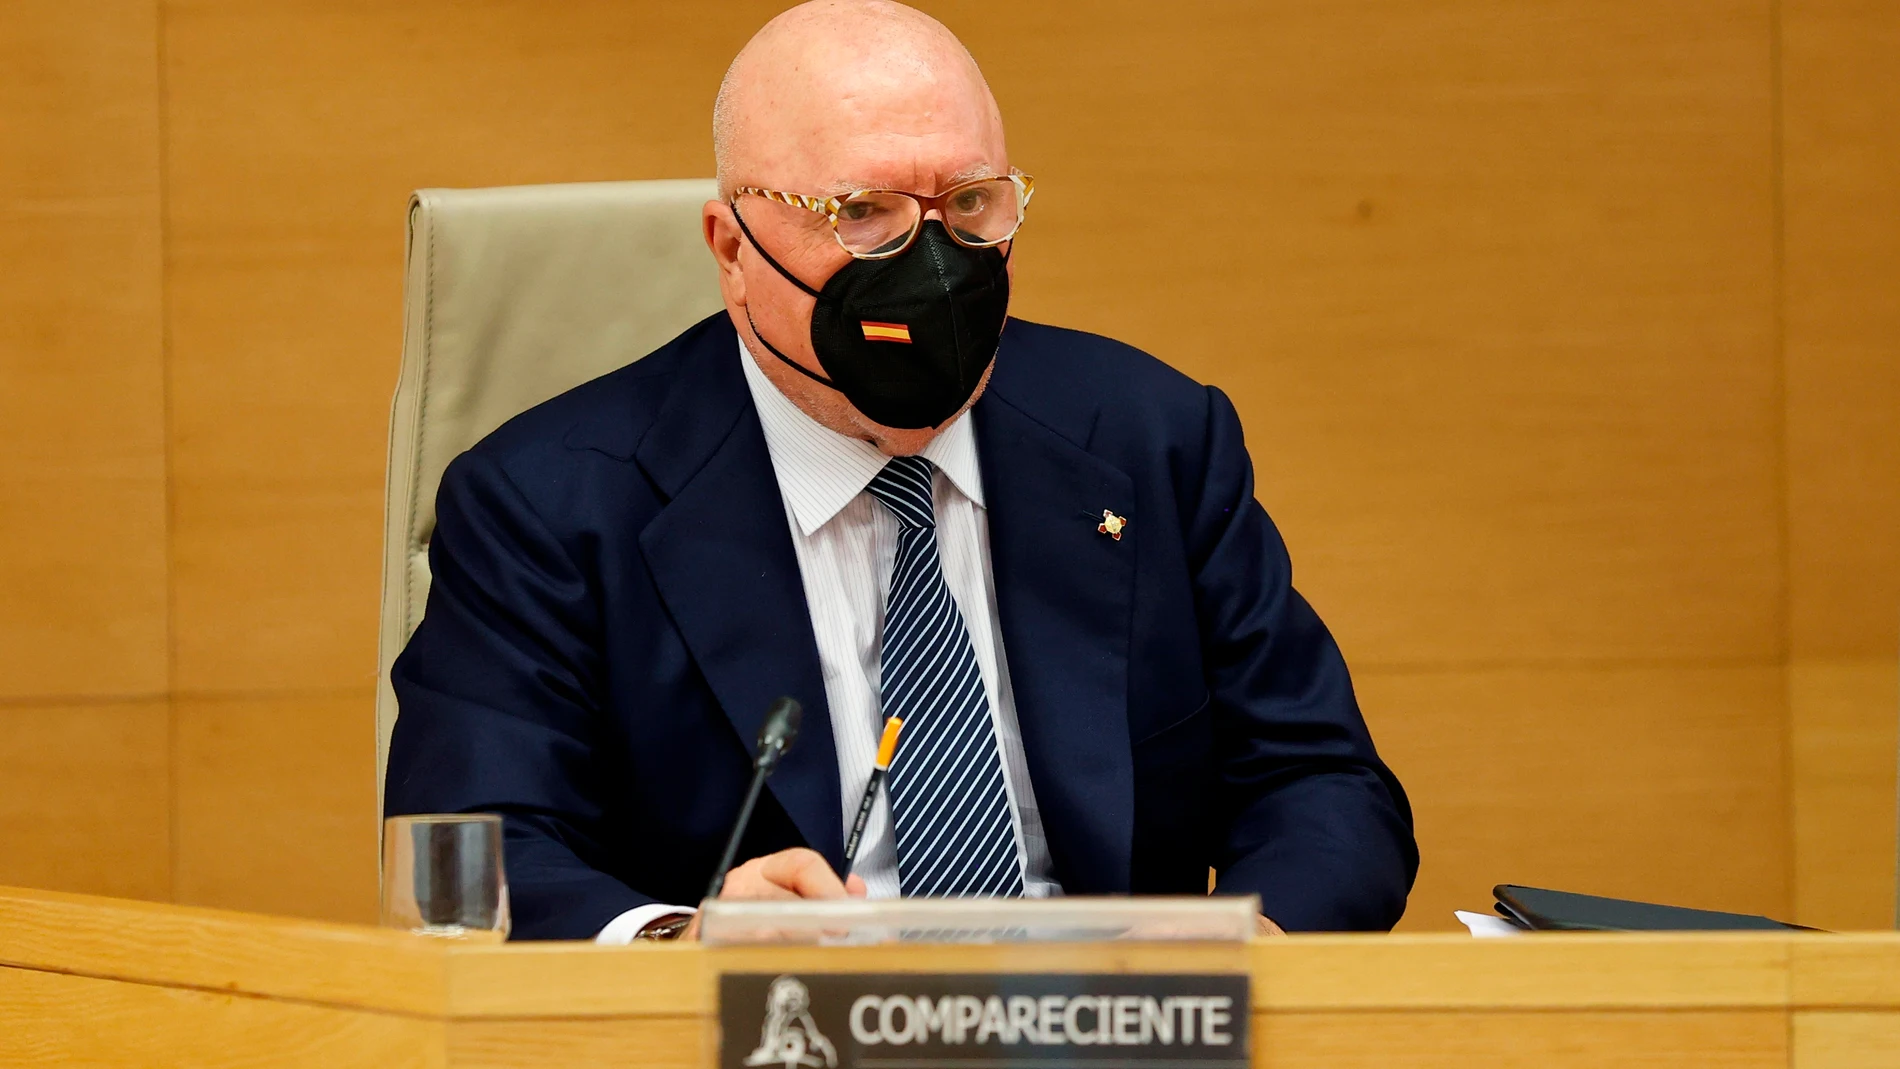 El expolicía José Villarejo comparece ante la comisión parlamentaria que investiga la presunta trama parapolicial diseñada para espiar al extesorero del PP Luis Bárcenas.